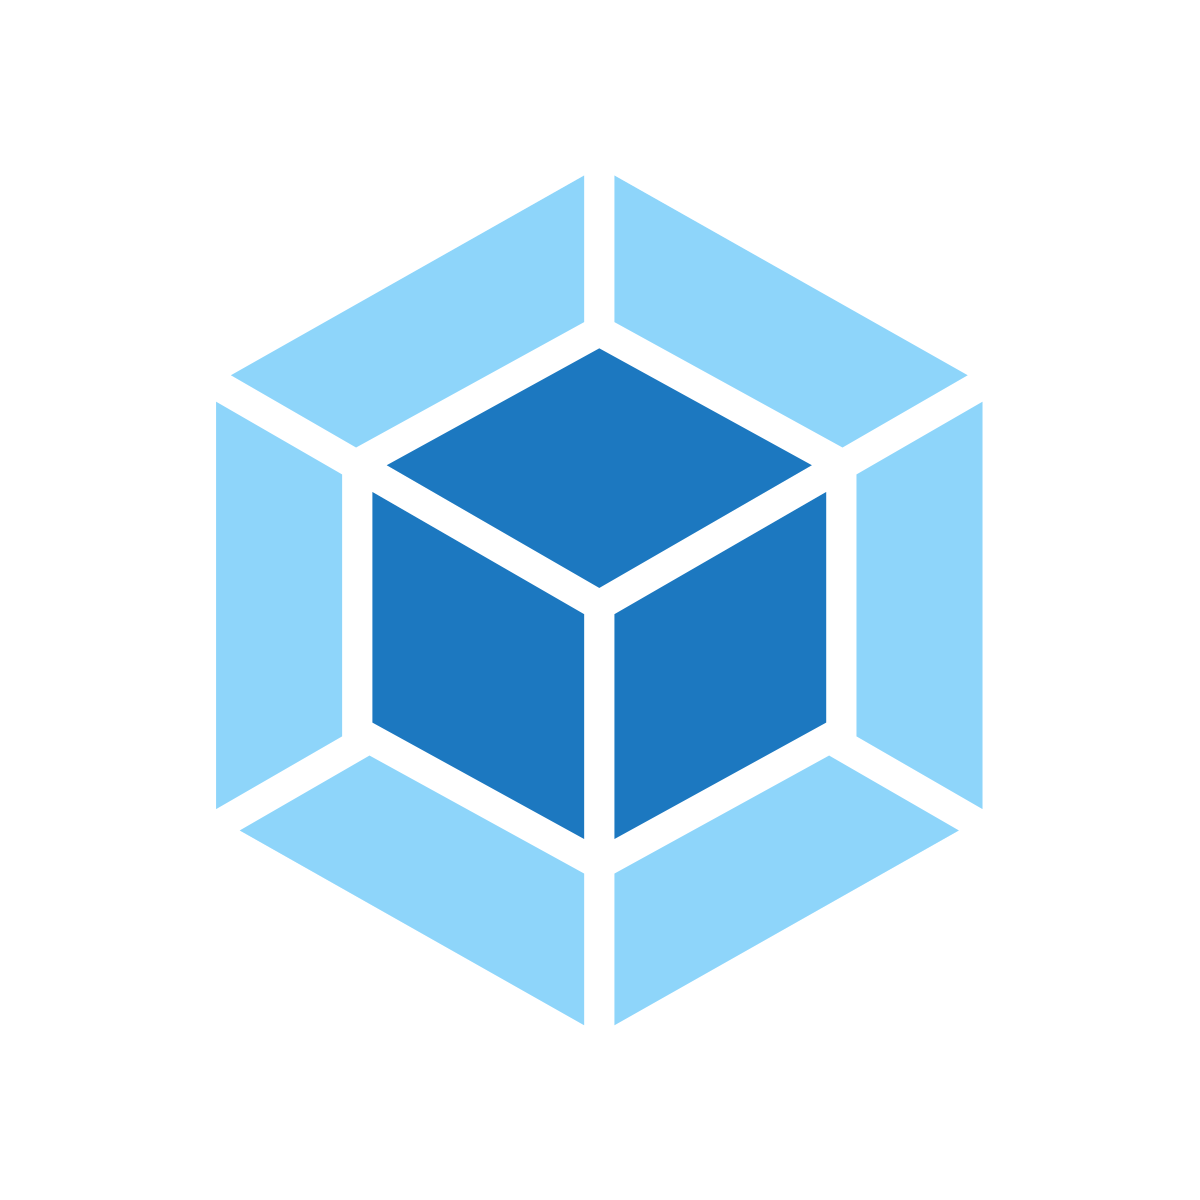 logo of the Webpack framework